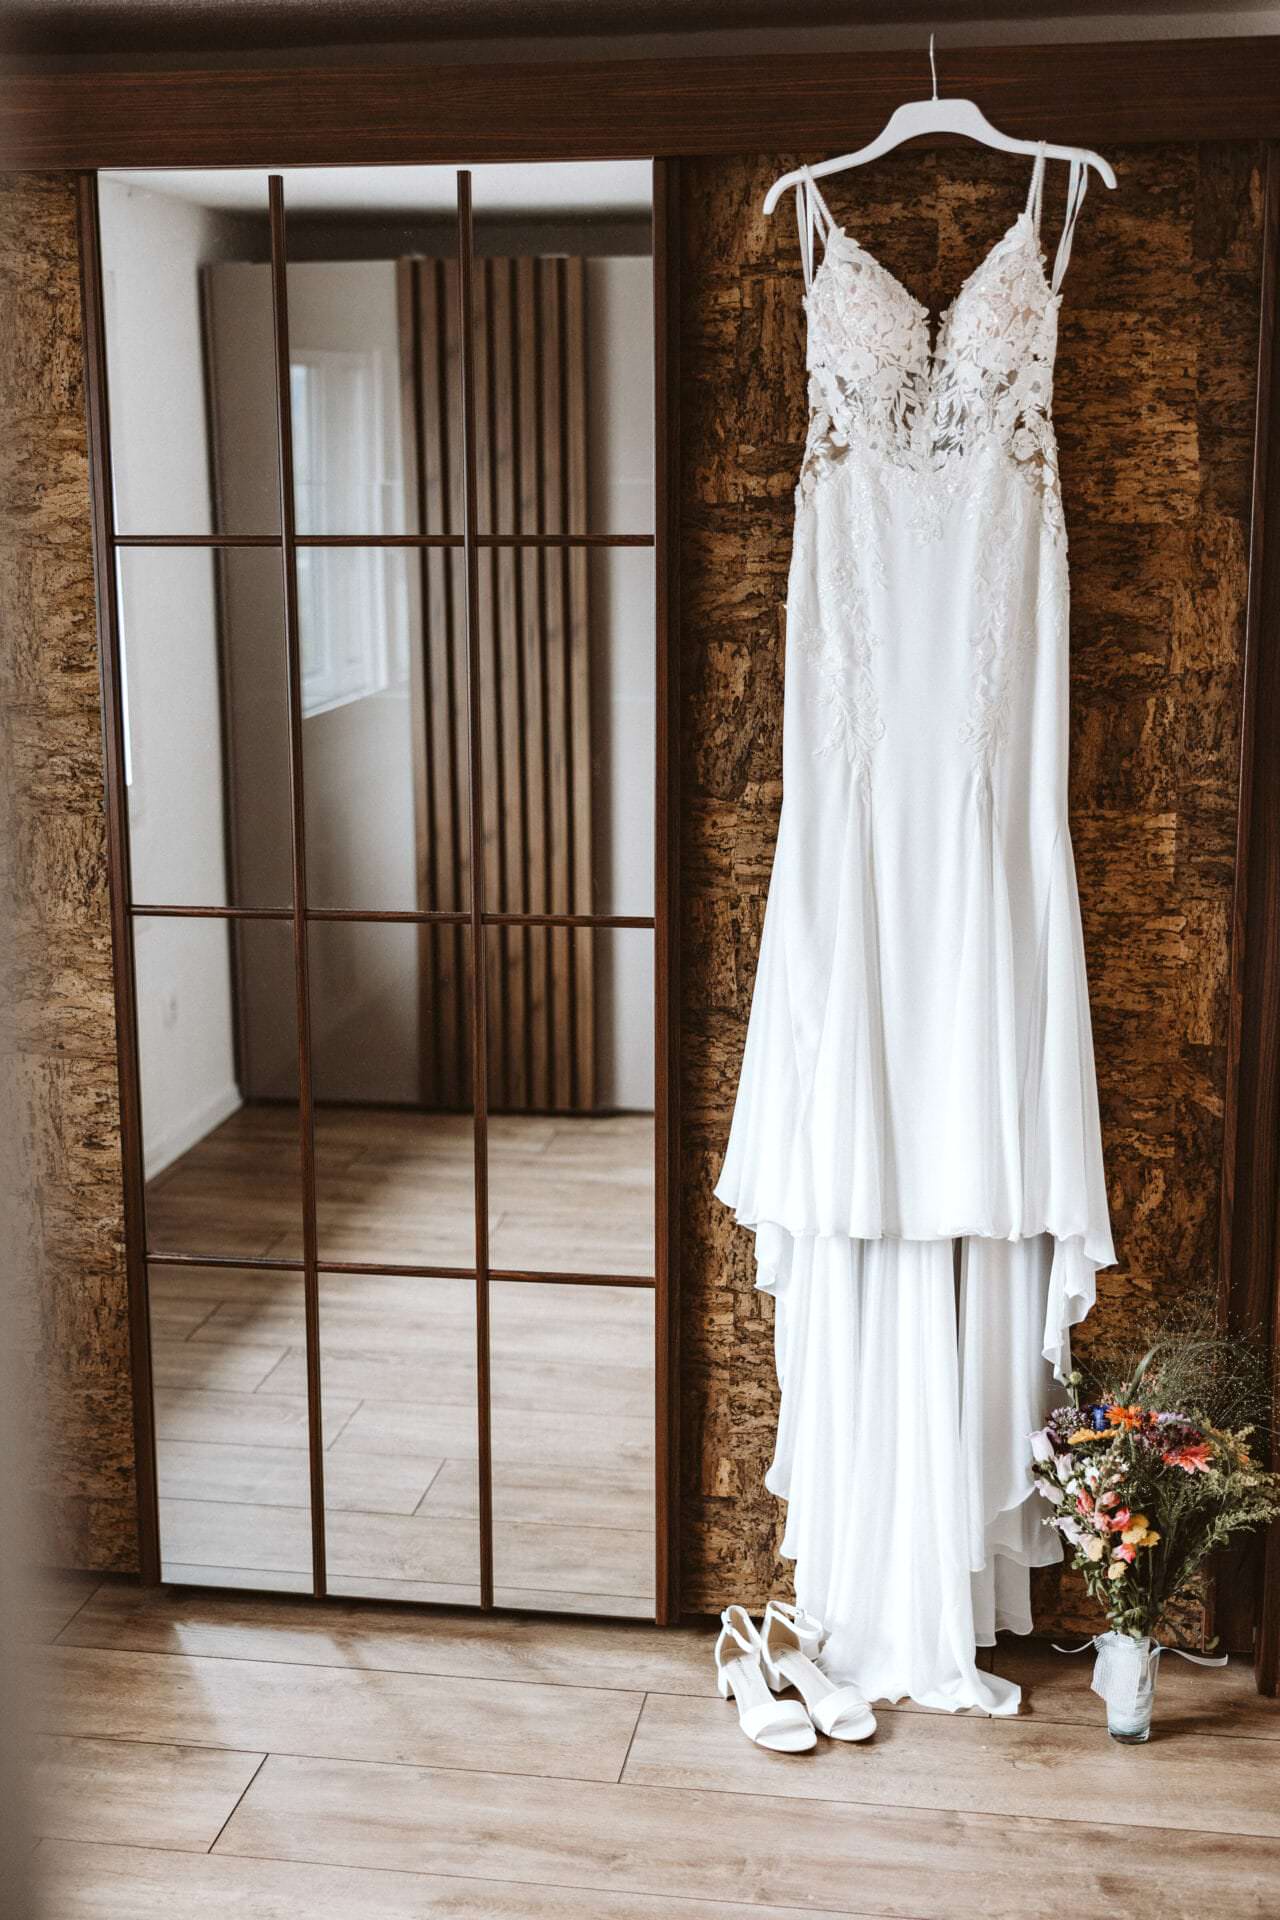 Hochzeitsfotograf Bochum Hochzeit Heiraten Hochzeitsfotos - Hochzeitskleid hängt auf einem weißen Kleiderbügel neben einem Spiegel. Unter dem Hochzeitskleid ist ein Blumenstrauß und Schuhe zu sehen